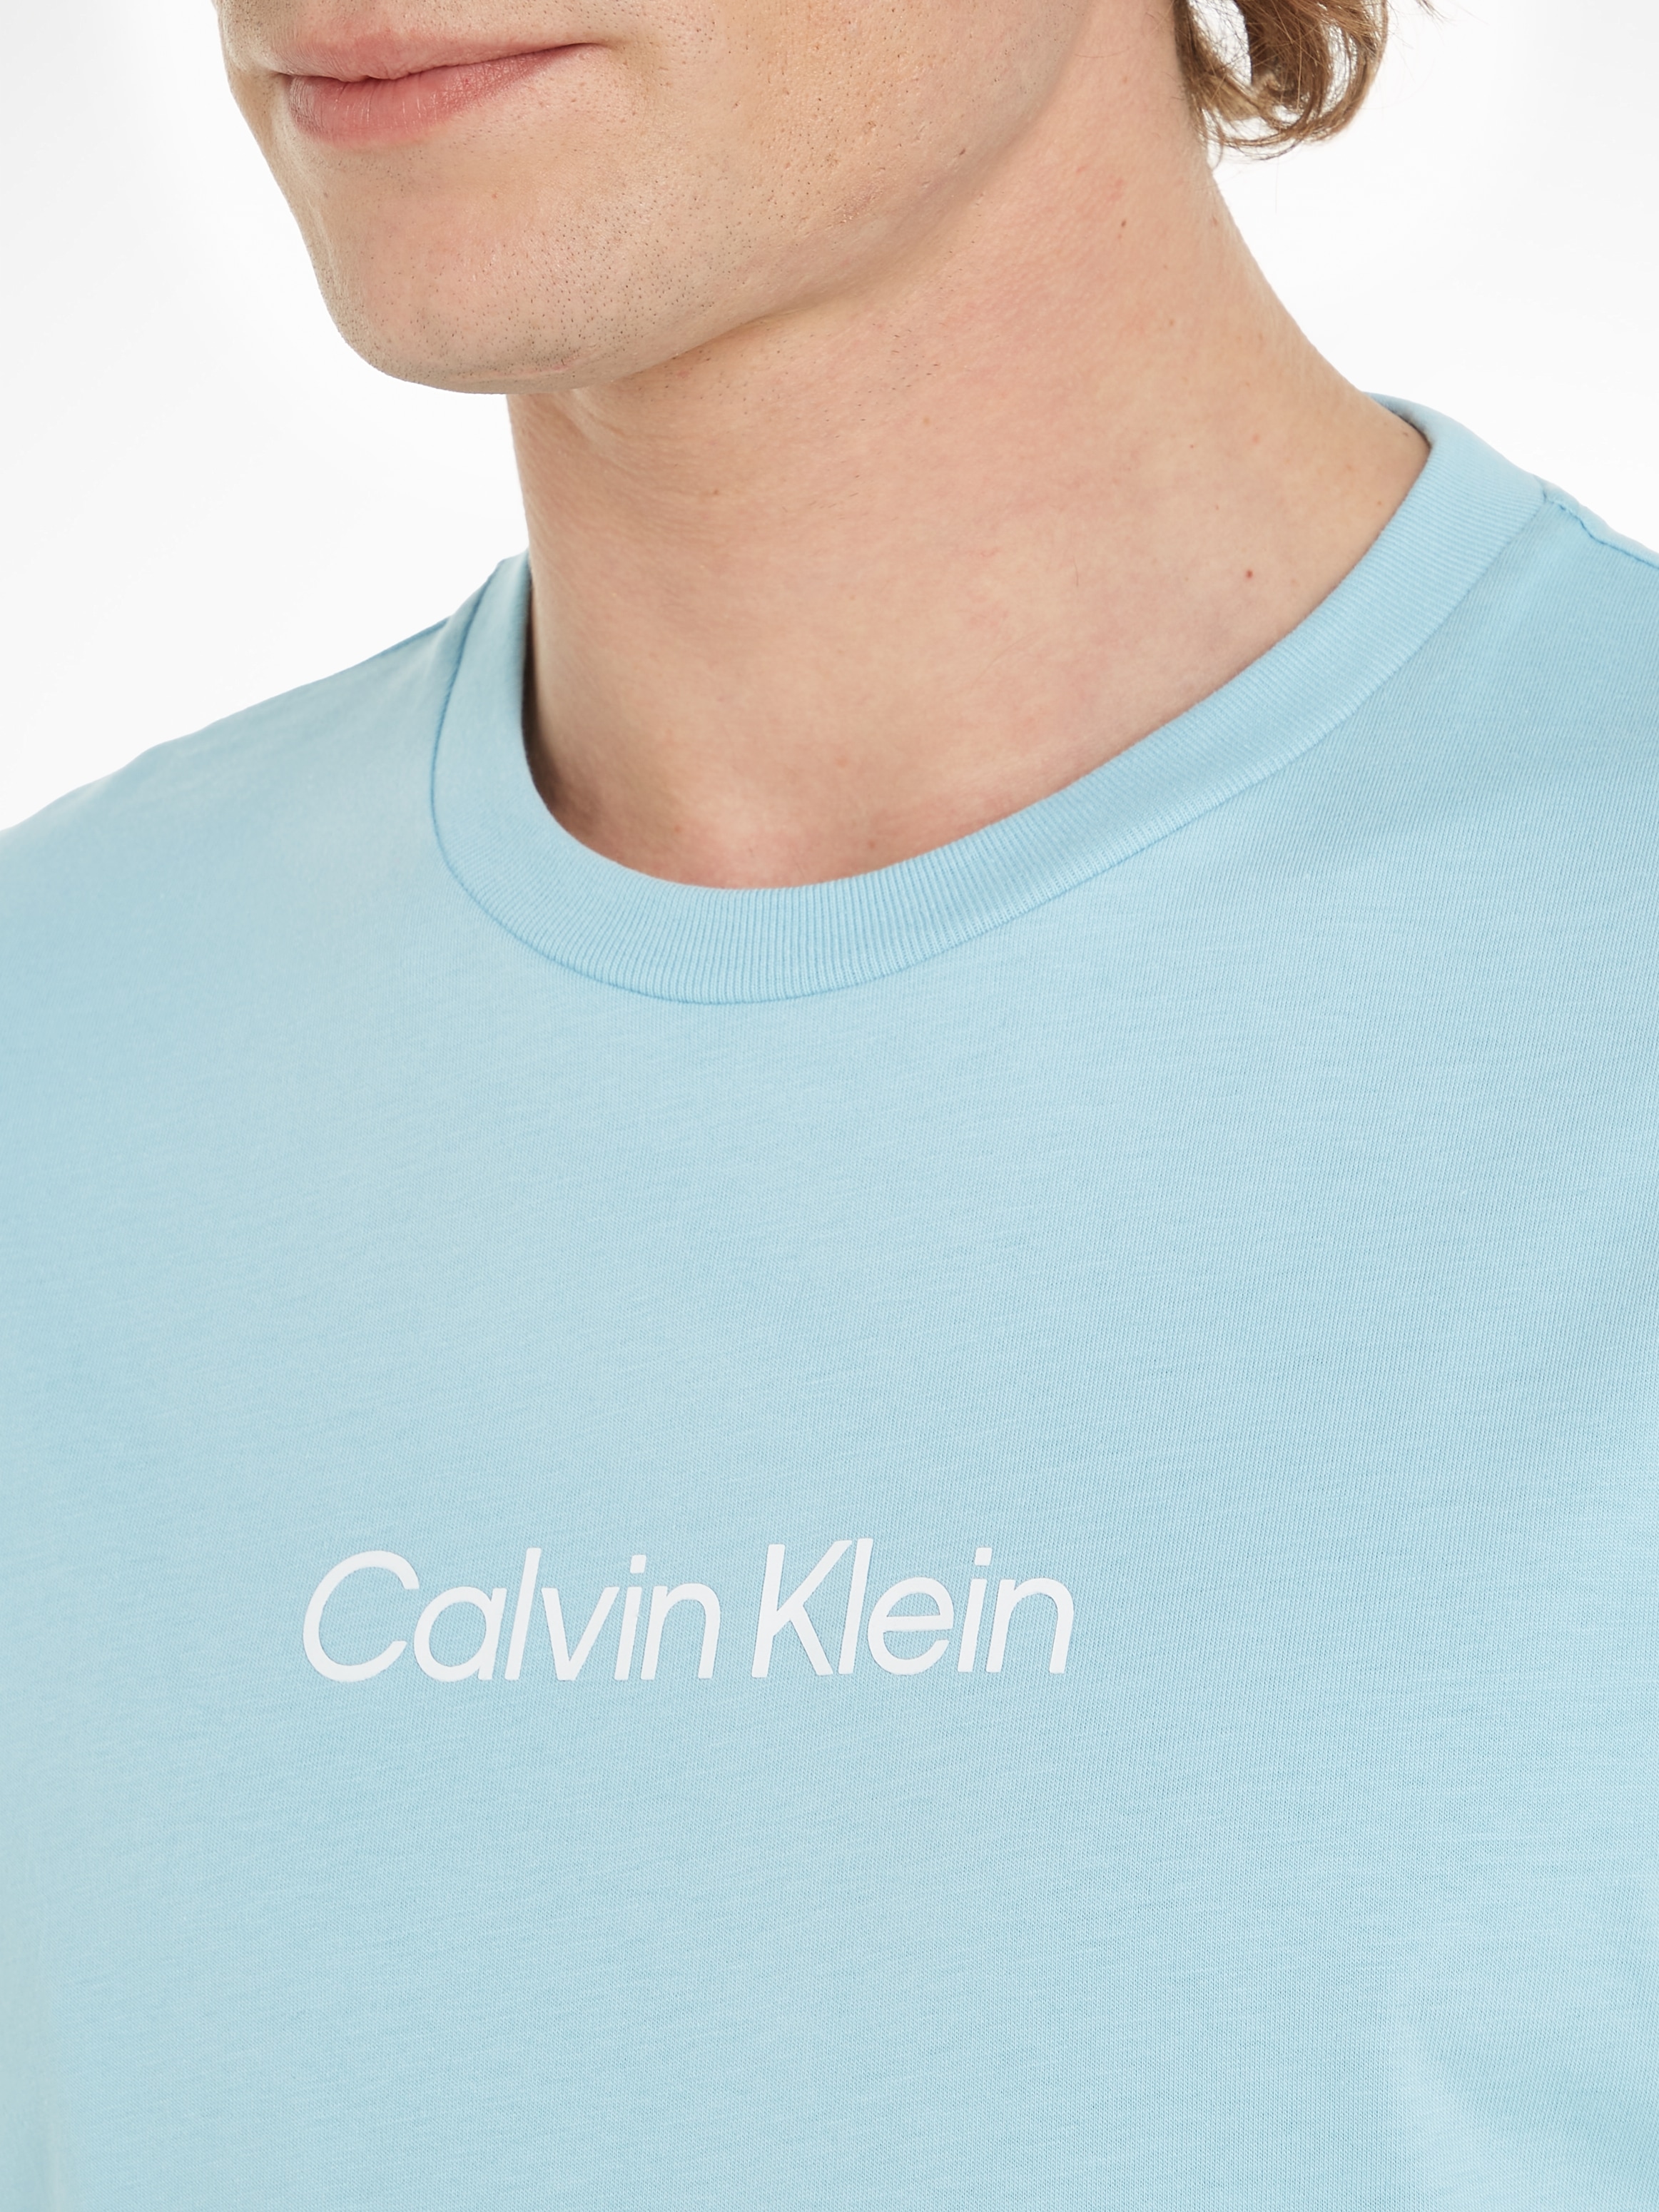 Calvin Klein T-Shirt LOGO Markenlabel COMFORT mit bei »HERO ♕ T-SHIRT«, aufgedrucktem